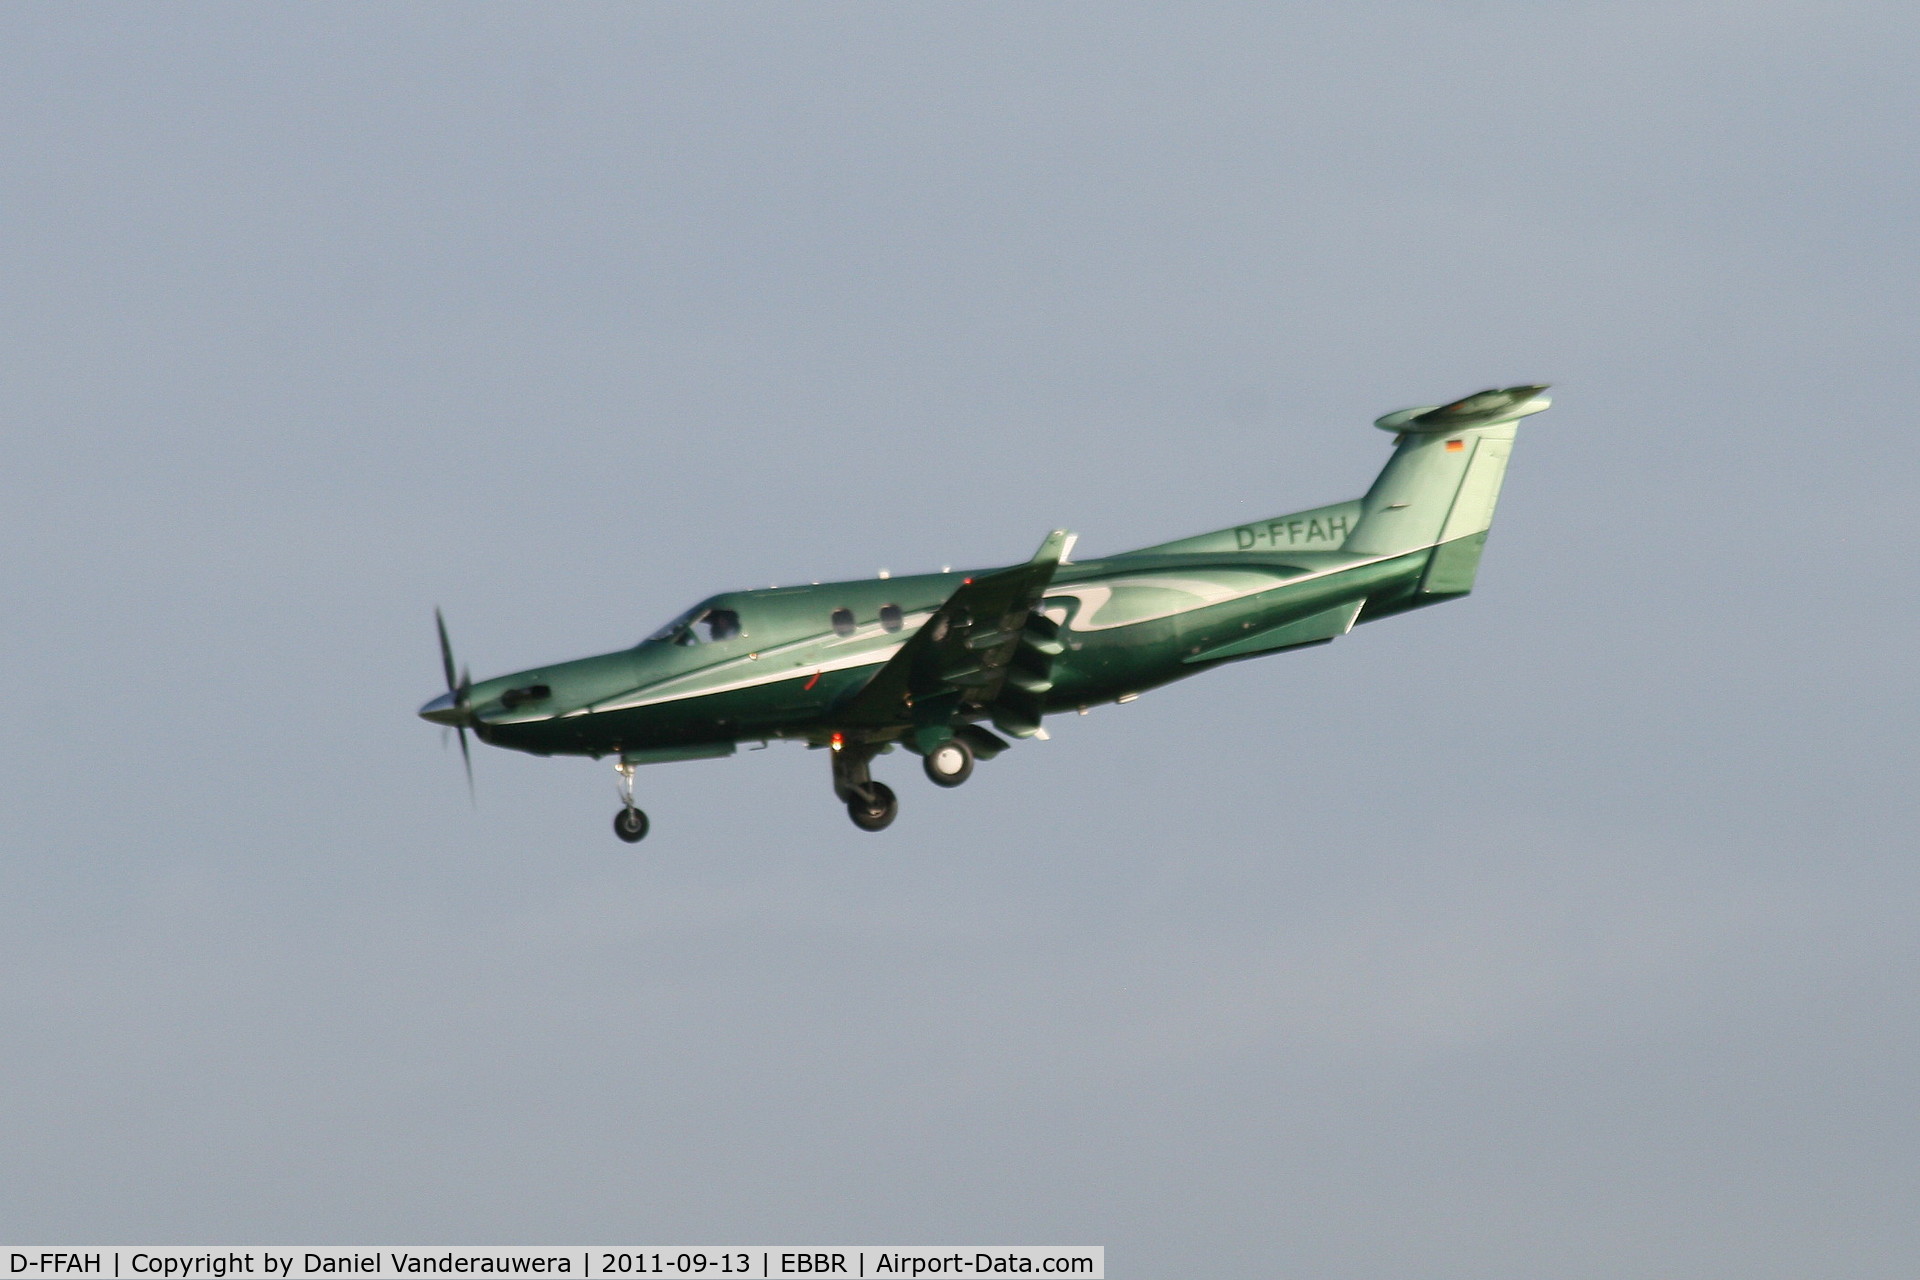 D-FFAH, 2005 Pilatus PC-12/45 C/N 677, Descending to RWY 25L